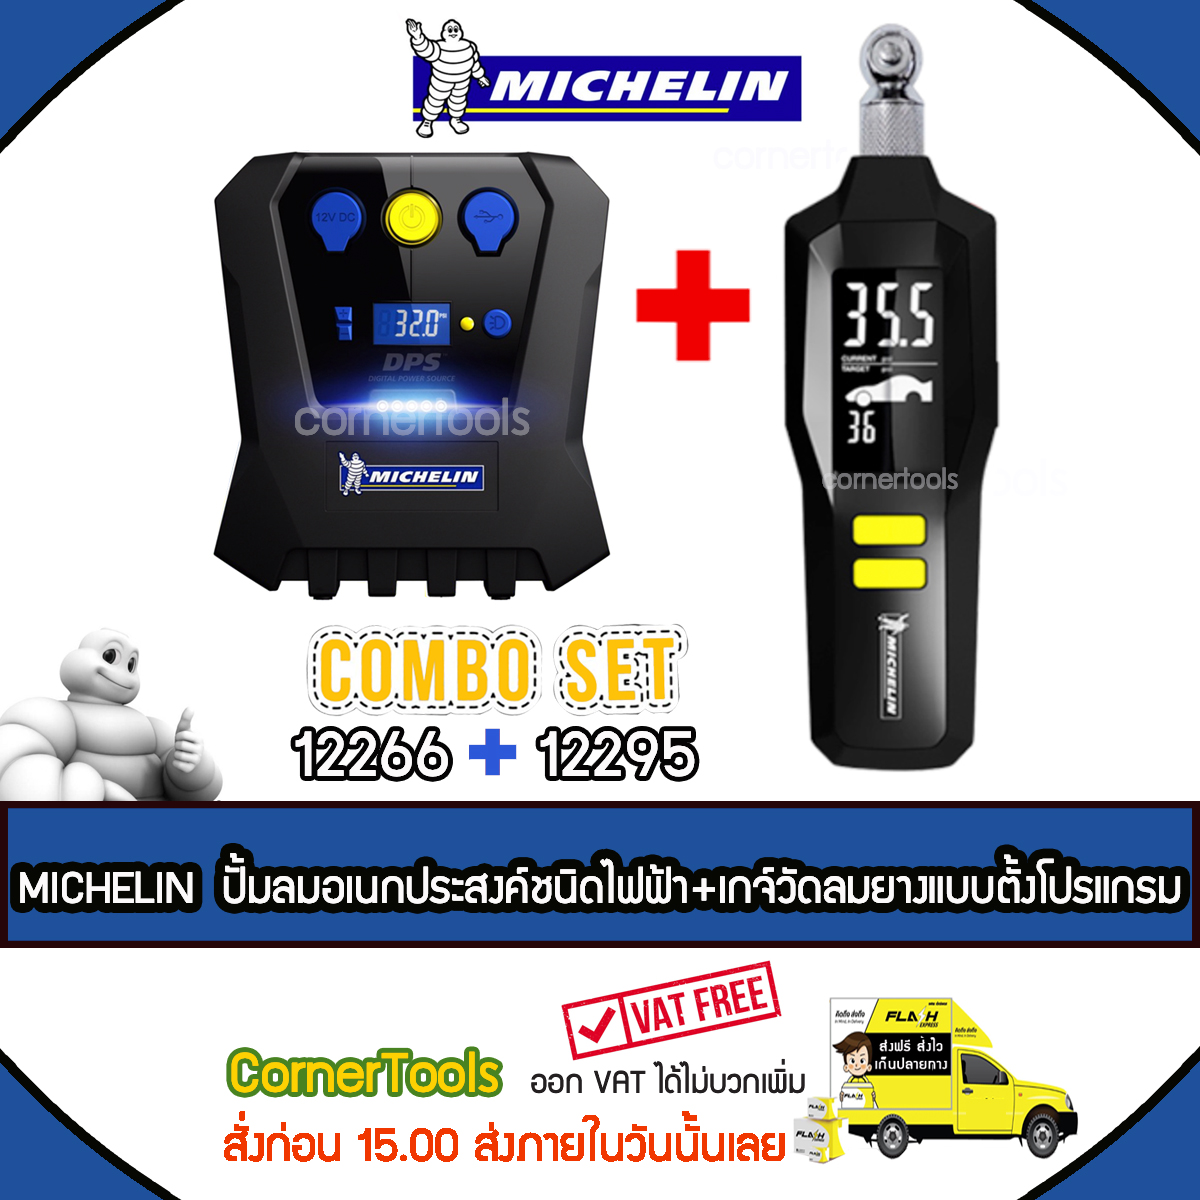 Michelin Digital Power Source ปั๊มลมอเนกประสงค์ชนิดไฟฟ้า รุ่น 12266 + Michelin เกจ์วัดลมยางแบบตั้งโปรแกรม รุ่น 12295 COMBO SET 12266 + 12295 ***ส่งฟรีเคอรี่ สั่งก่อนบ่ายส